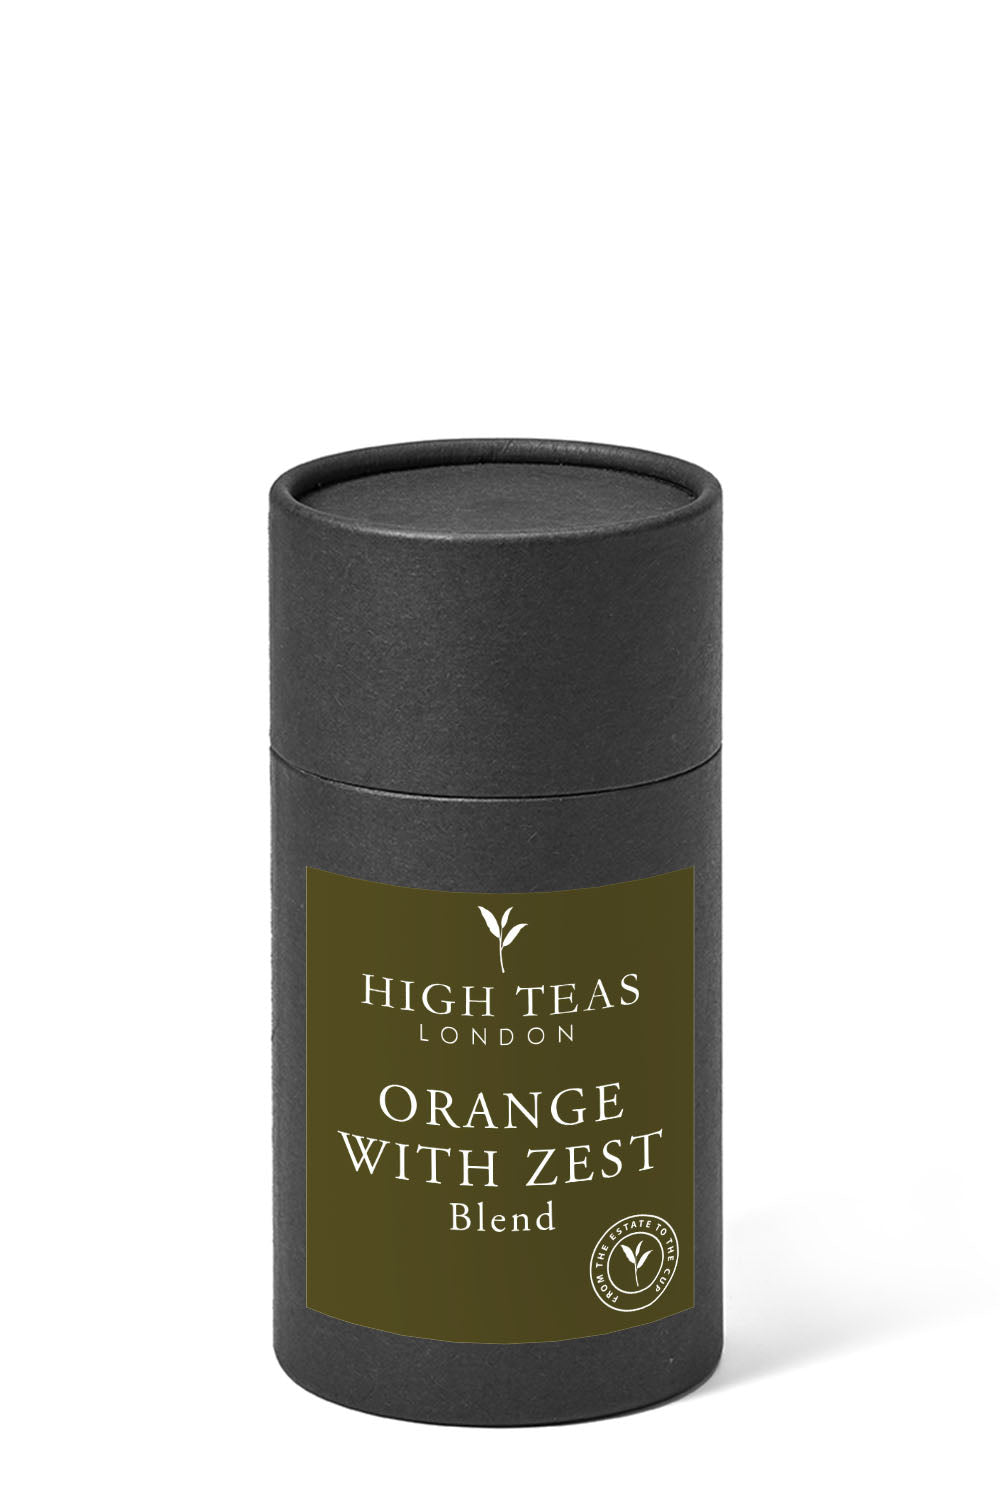 Orange with zests-60g gift-Loose Leaf Tea-High Teas